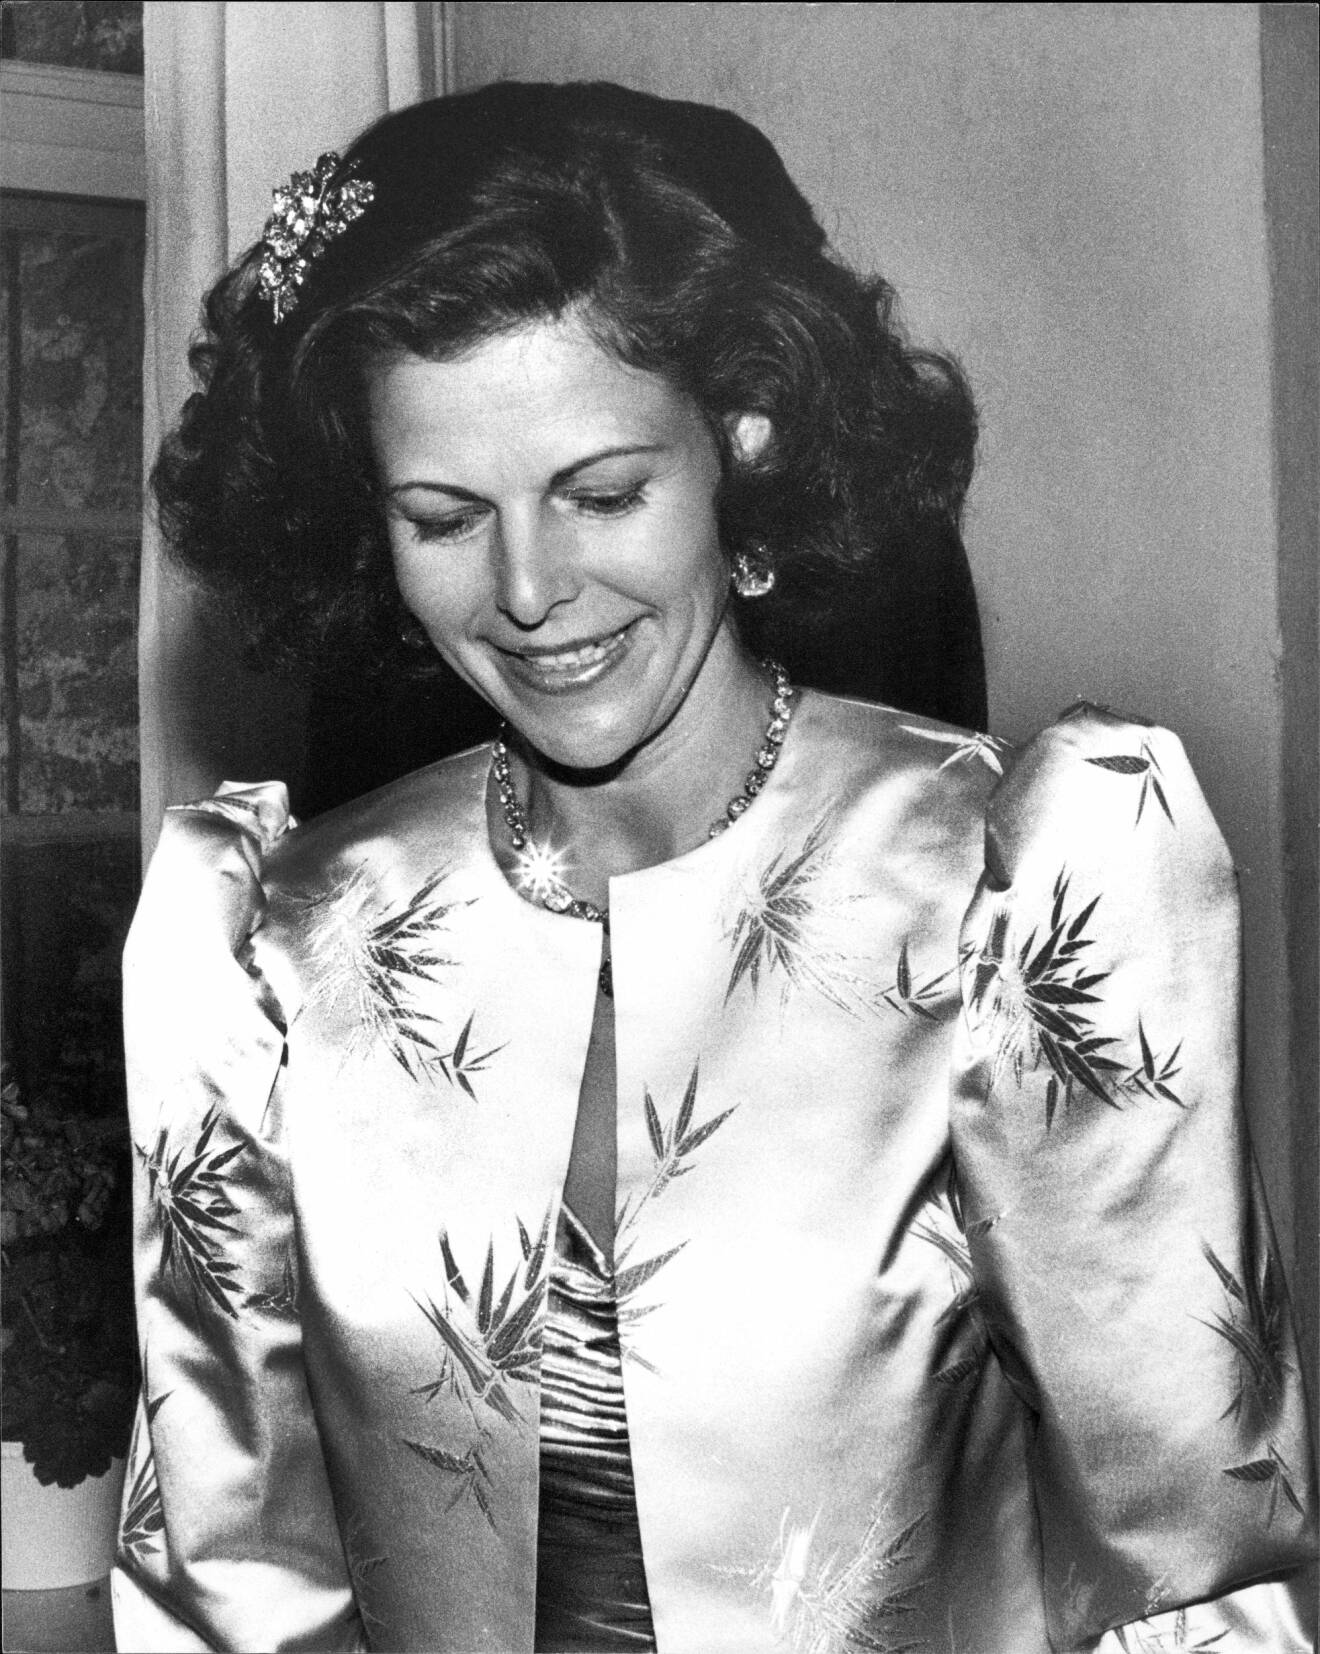 Drottning Silvia i snygg frisyr 1987